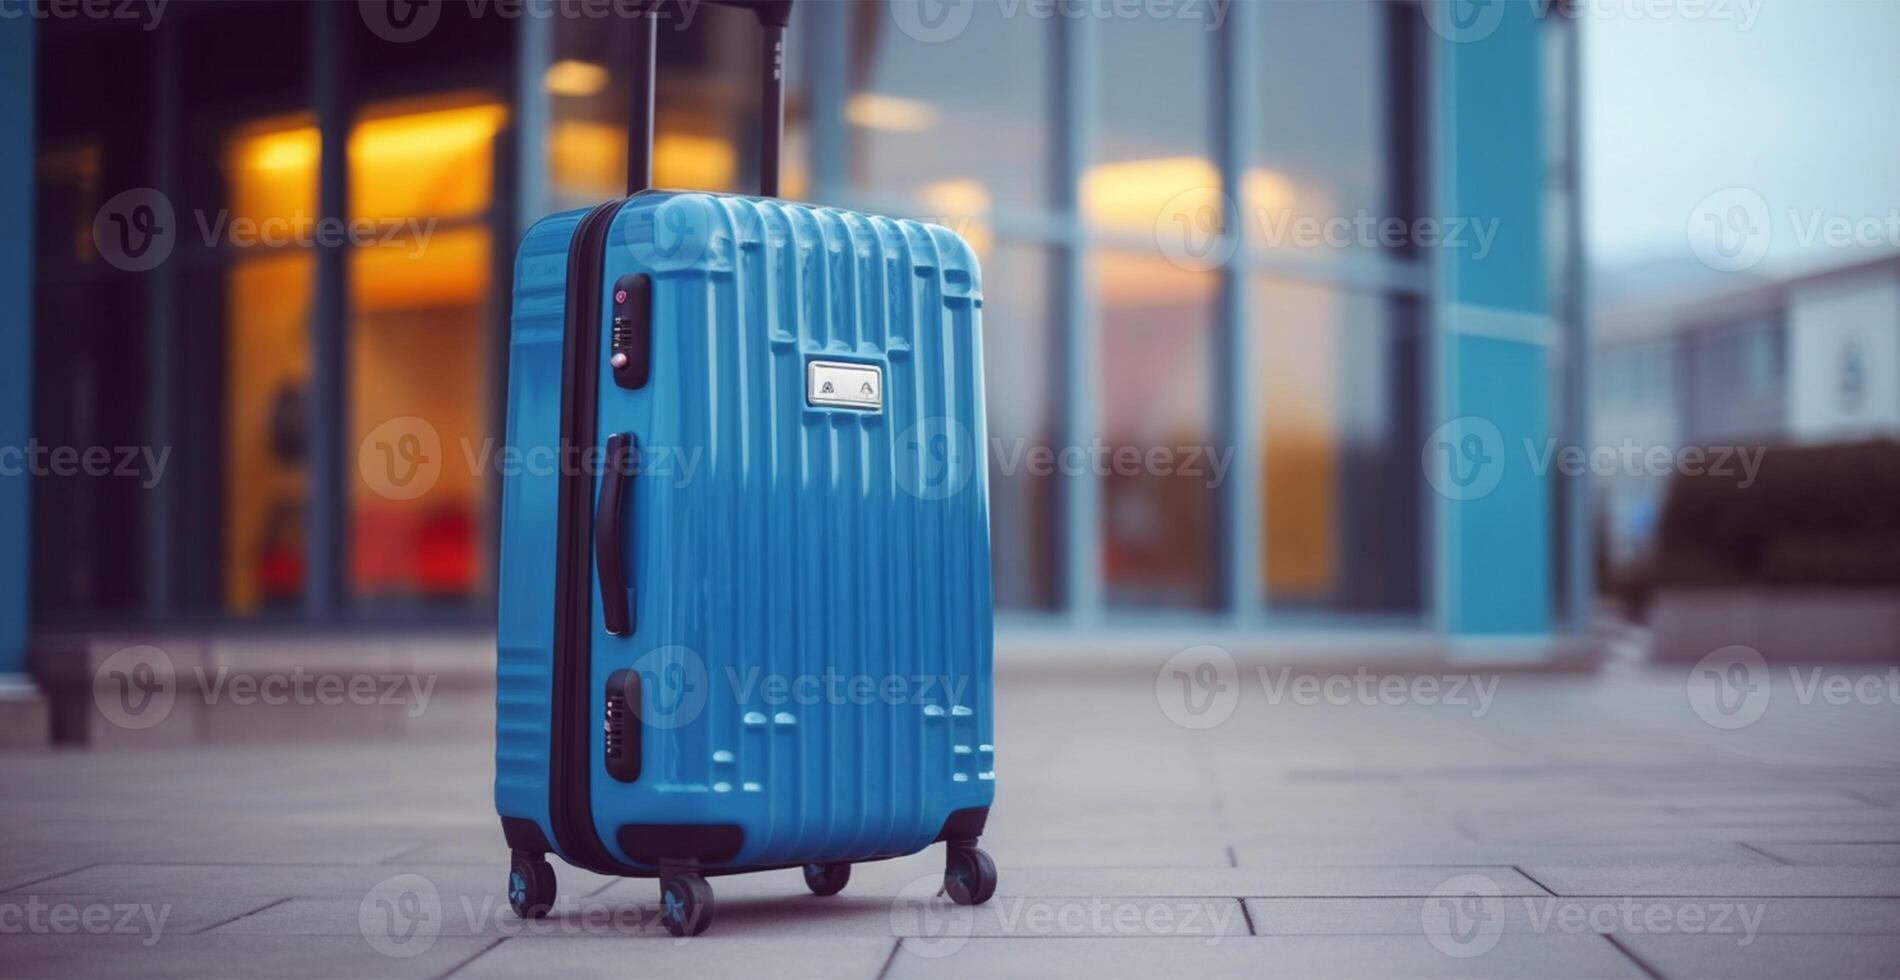 azul mala, aeroporto bagagem - ai gerado imagem foto